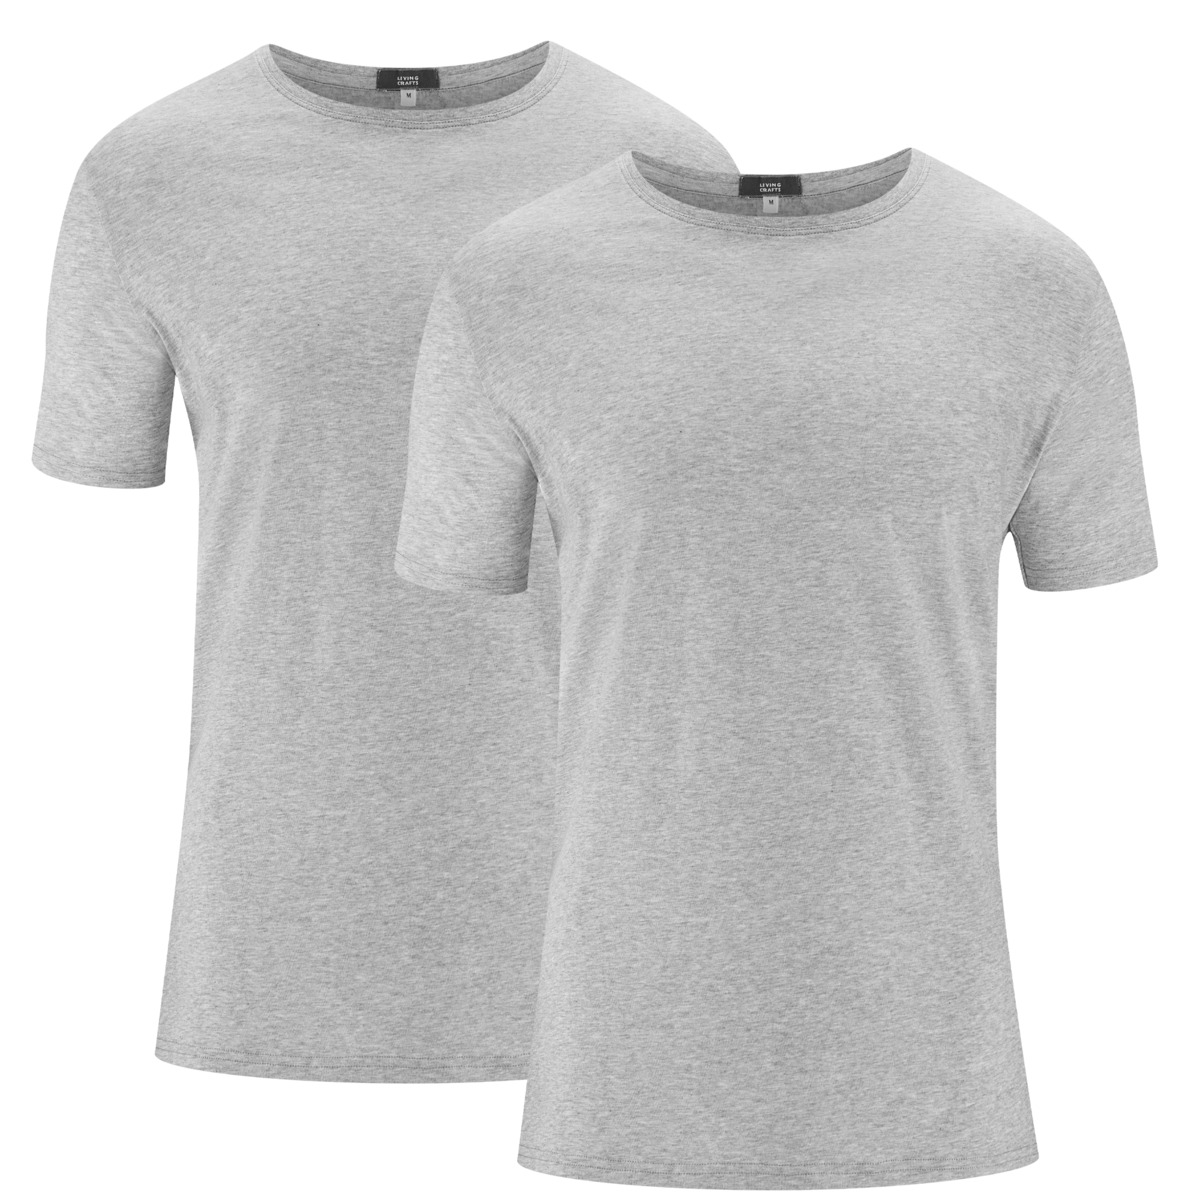 Grau T-Shirt, 2er-Pack, FABIAN